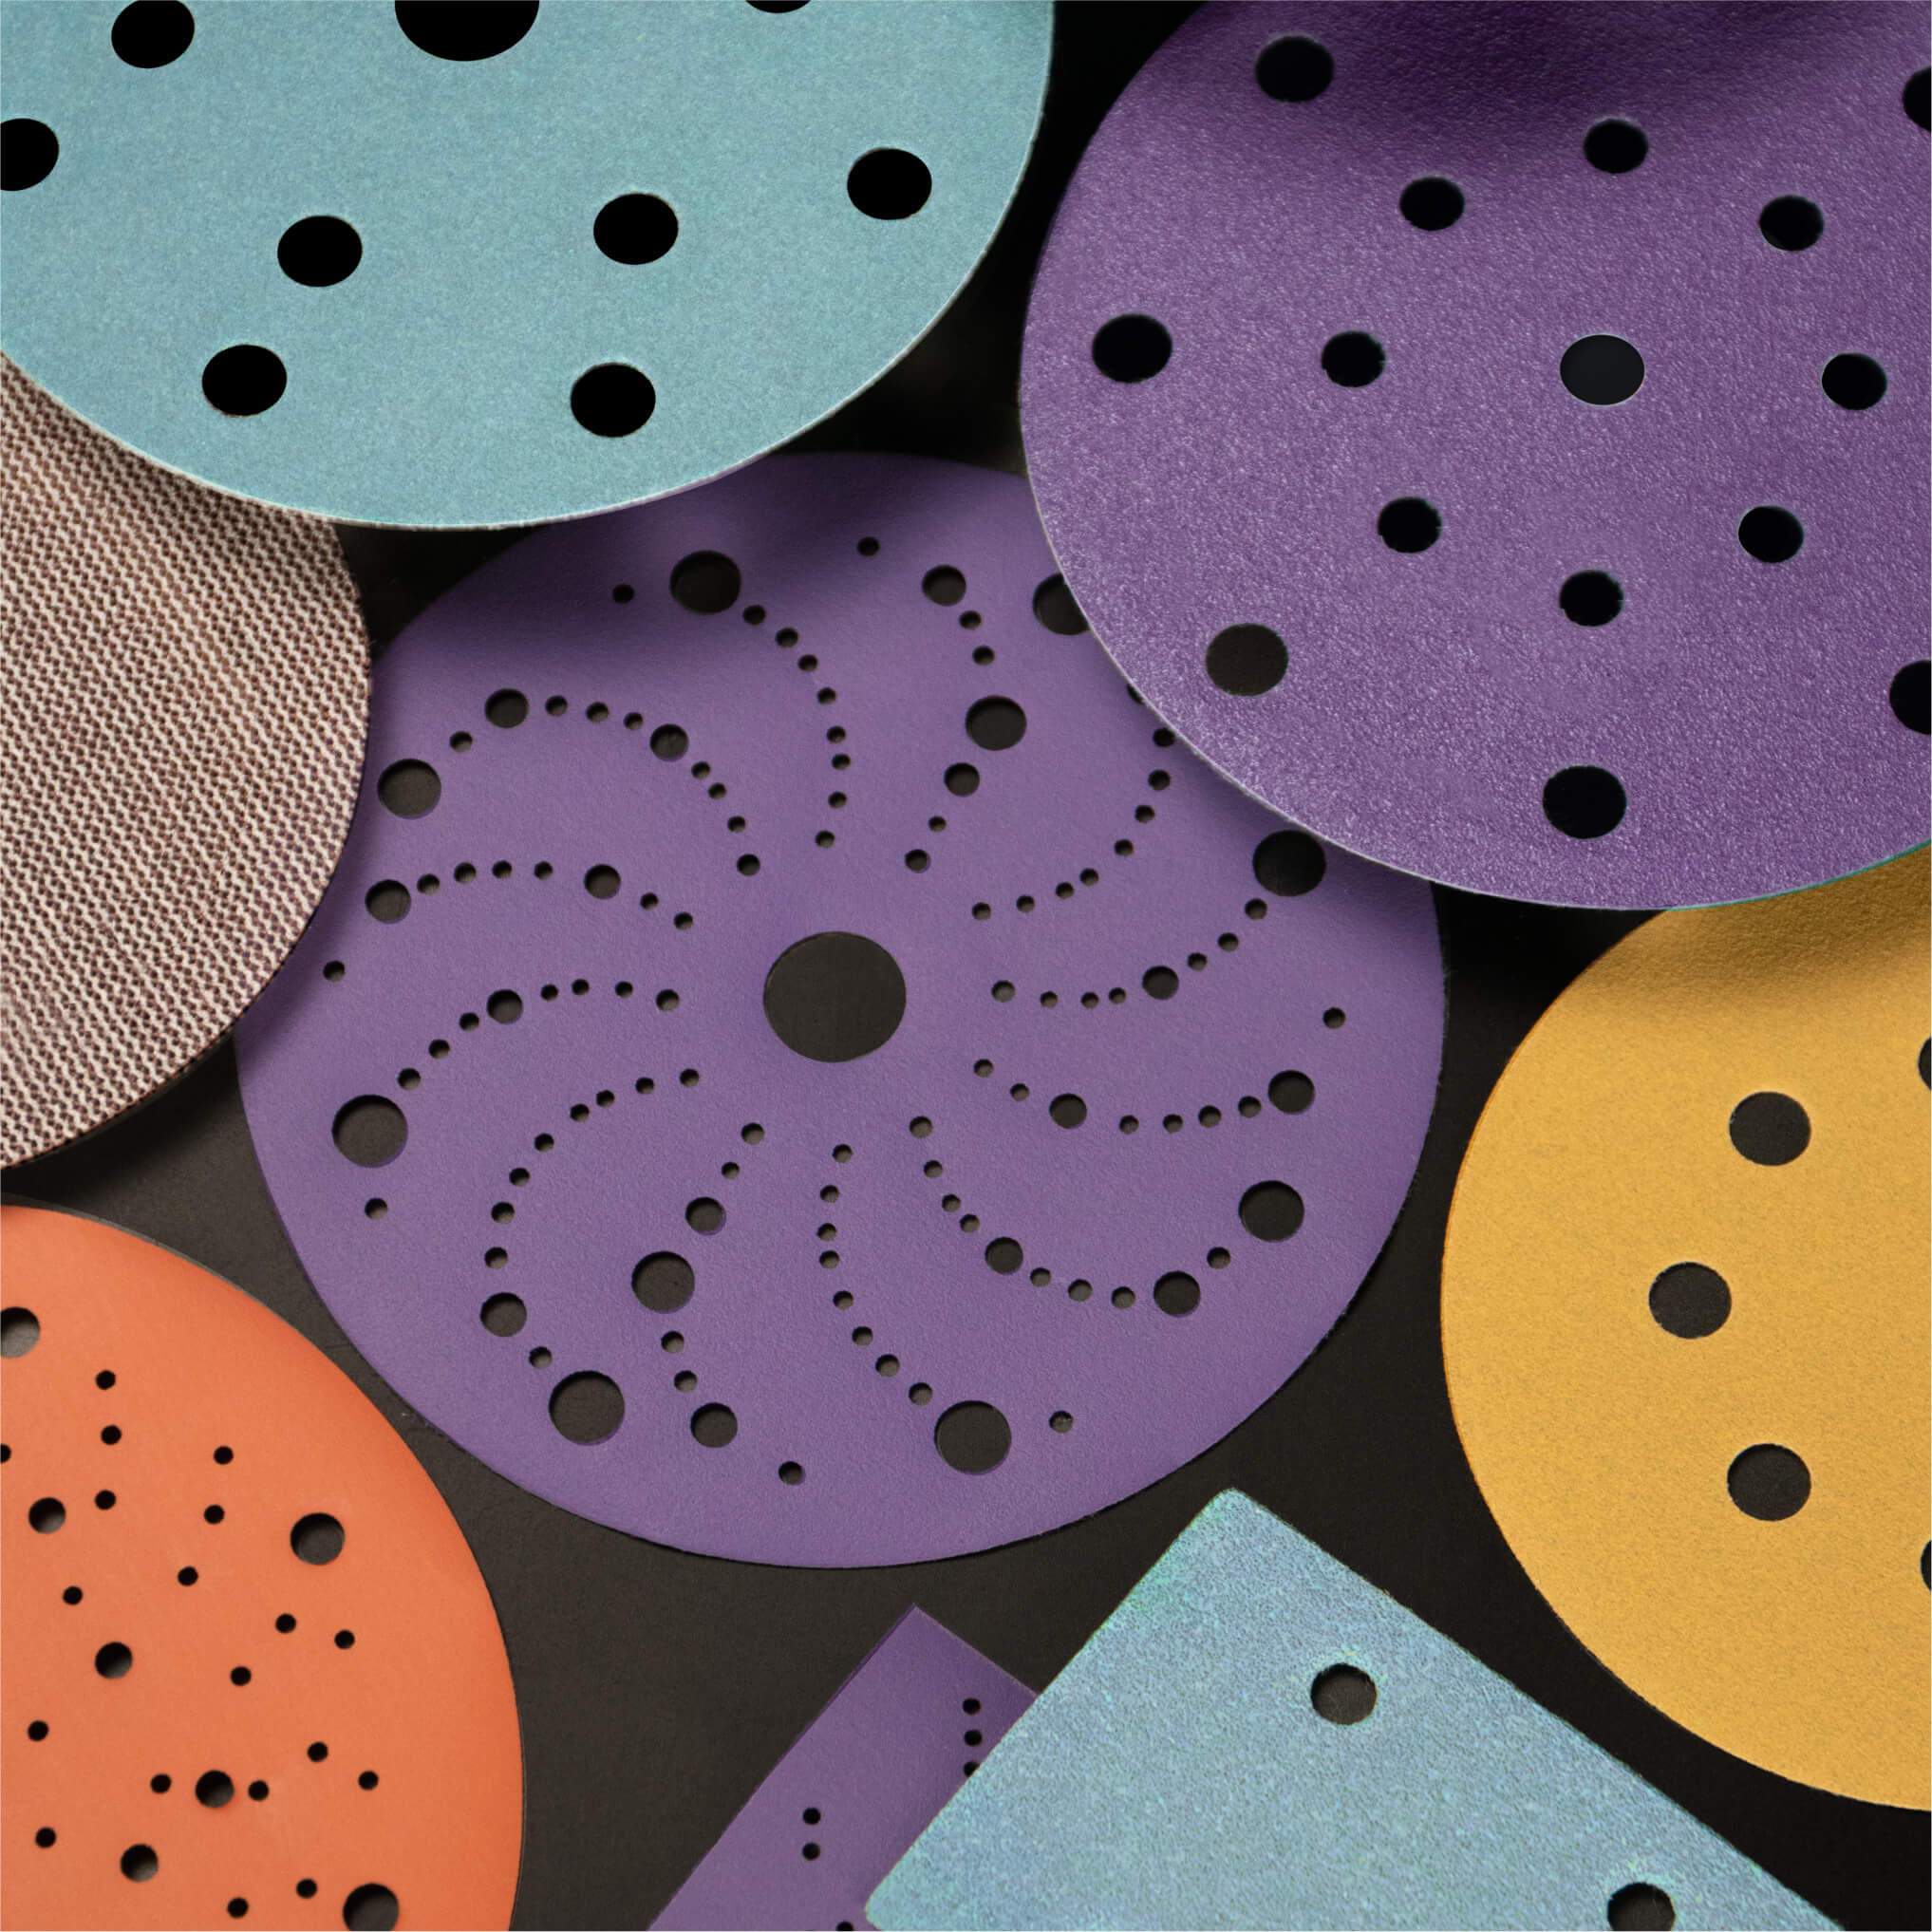 fastplus Keramik-Schleifscheiben | fastplus ceramic sanding discs